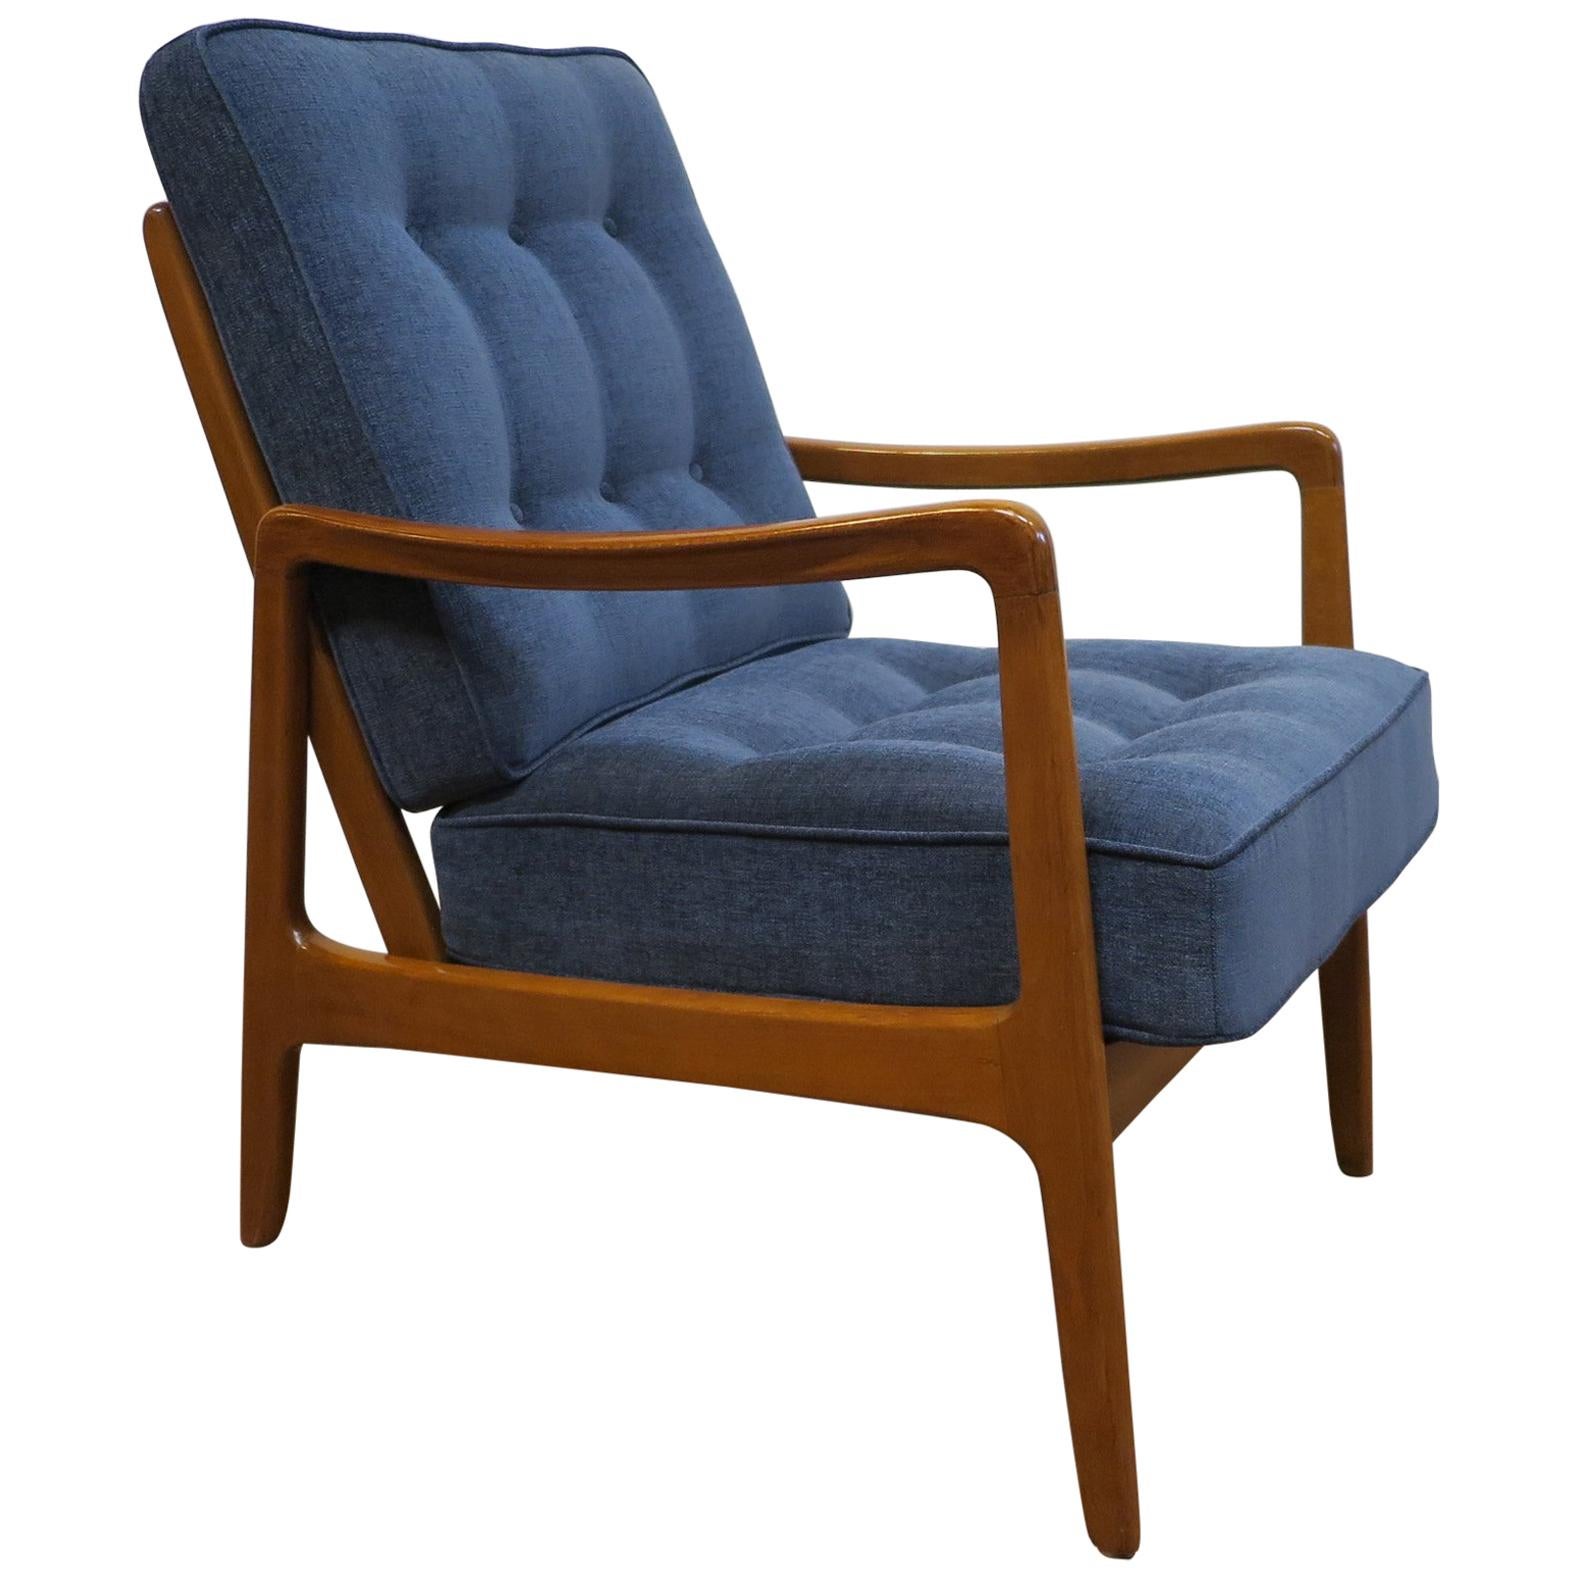 Ole Wanscher Lounge Chair